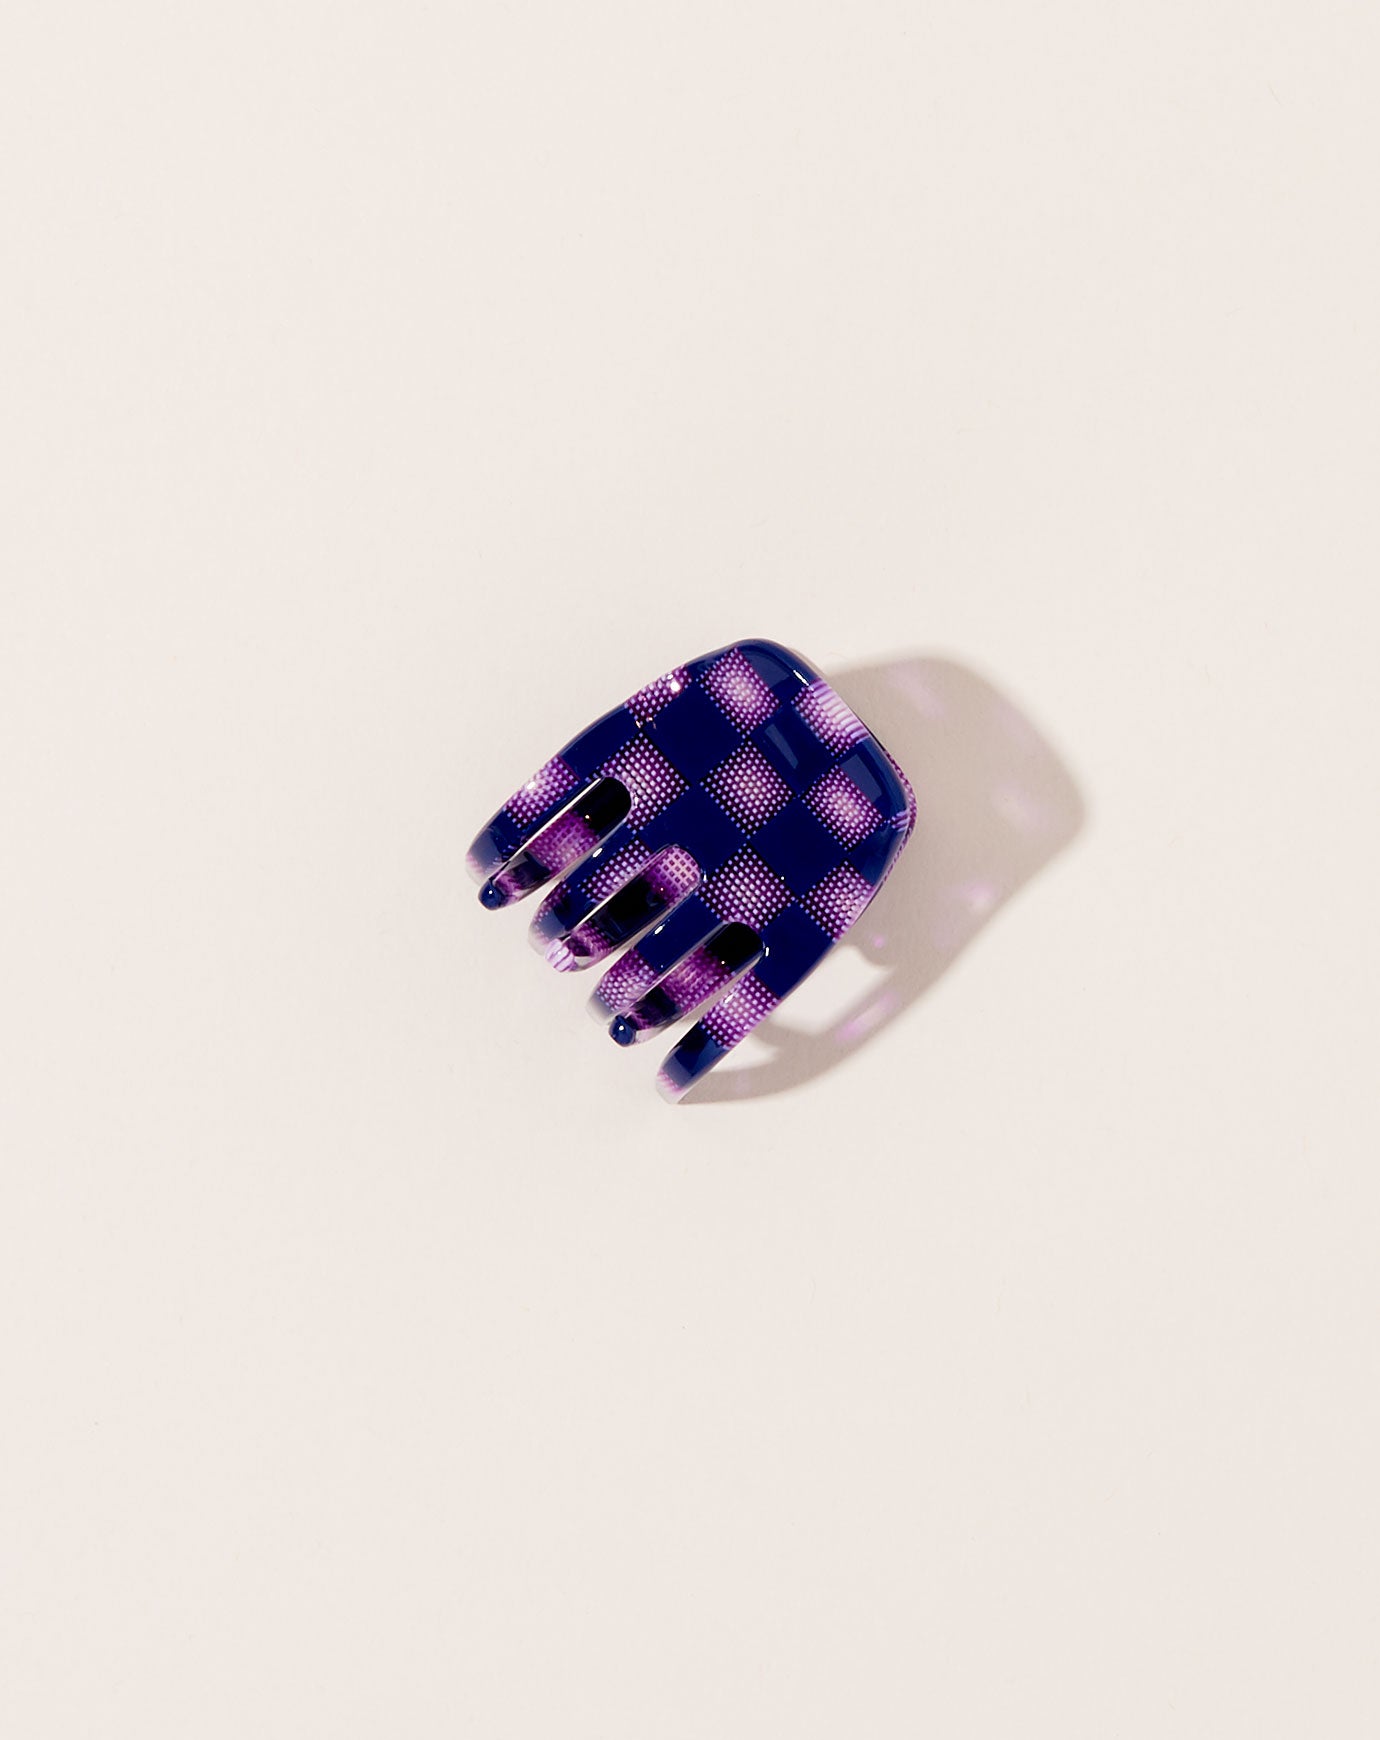 Machete Mini Claw in Purple Checker